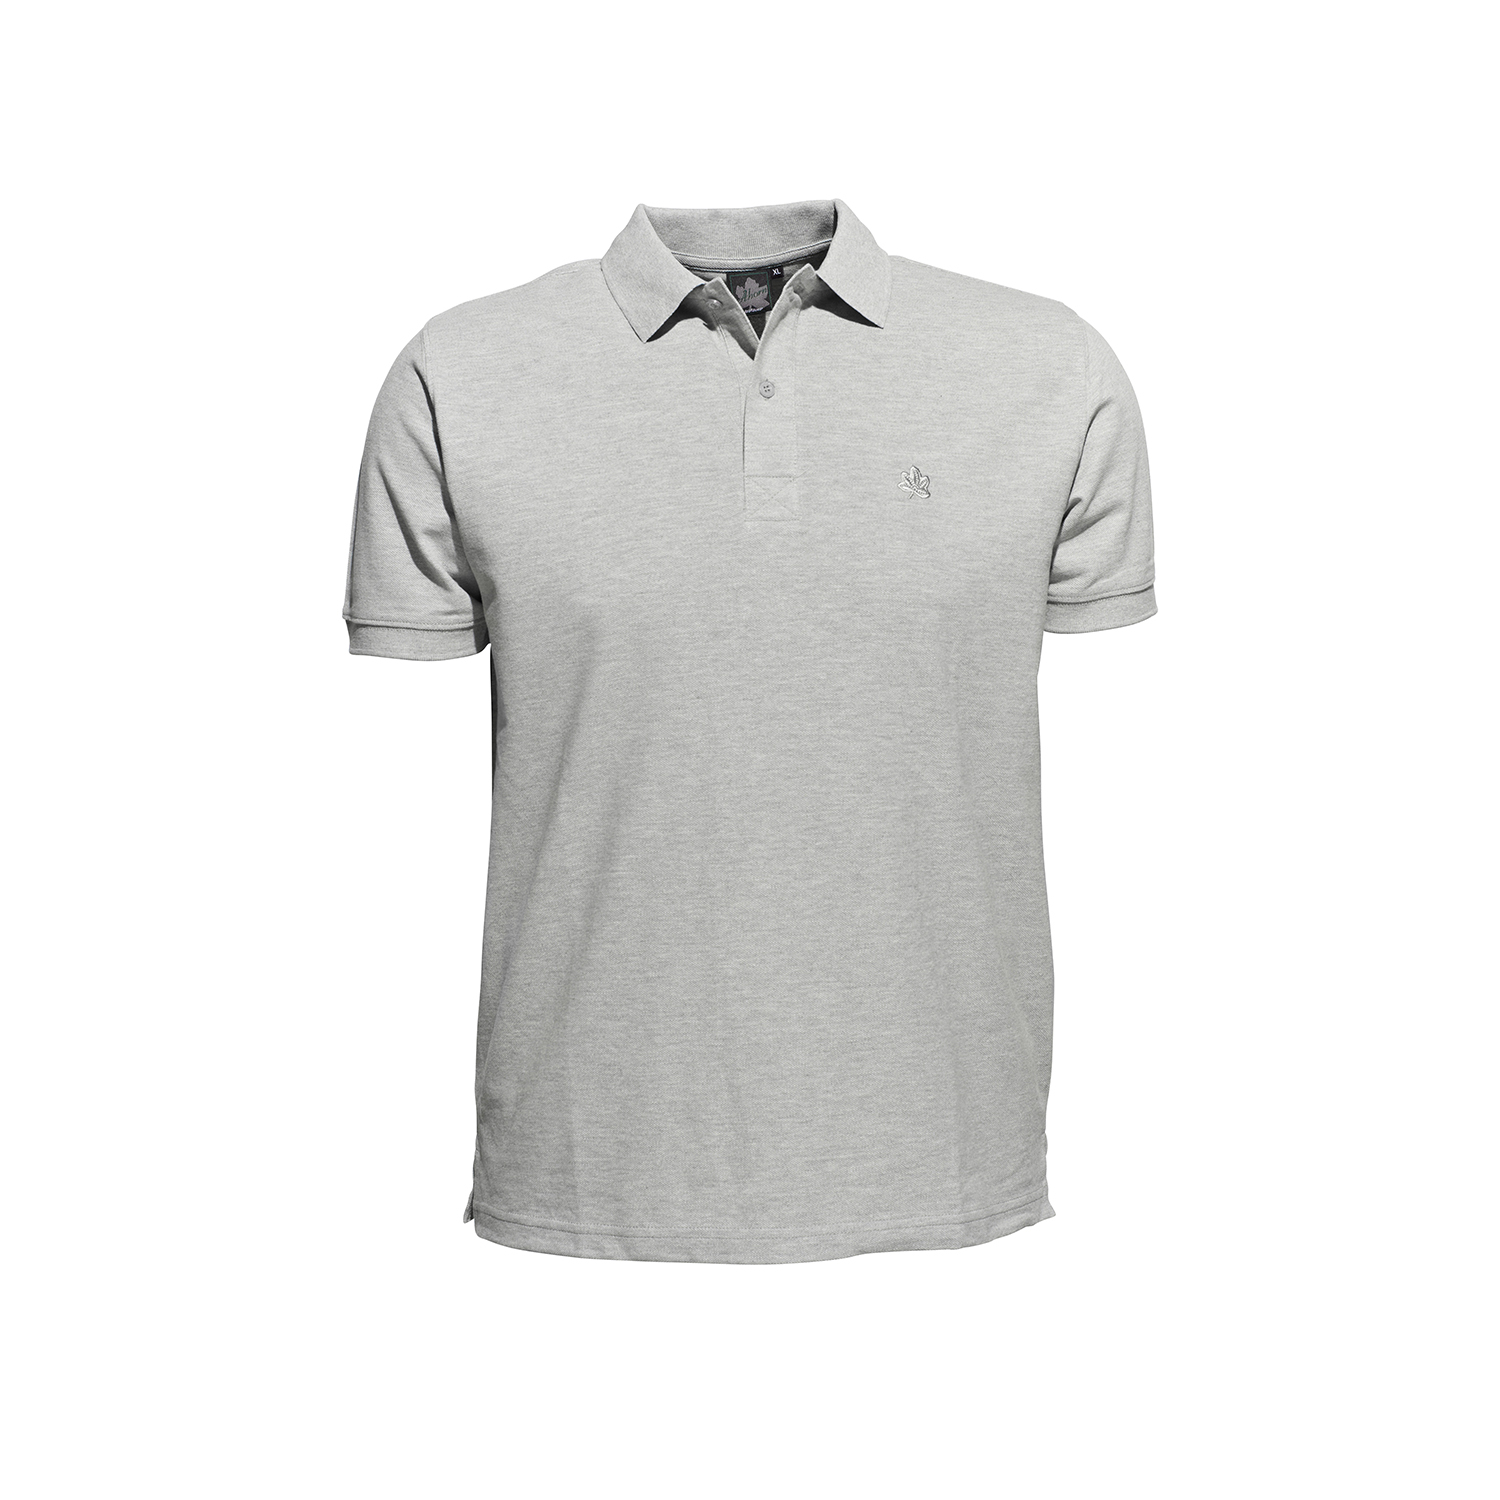 Polo-shirt en gris chiné à manches courtes by Ahorn Sportswear en grandes tailles 2XL - 10XL